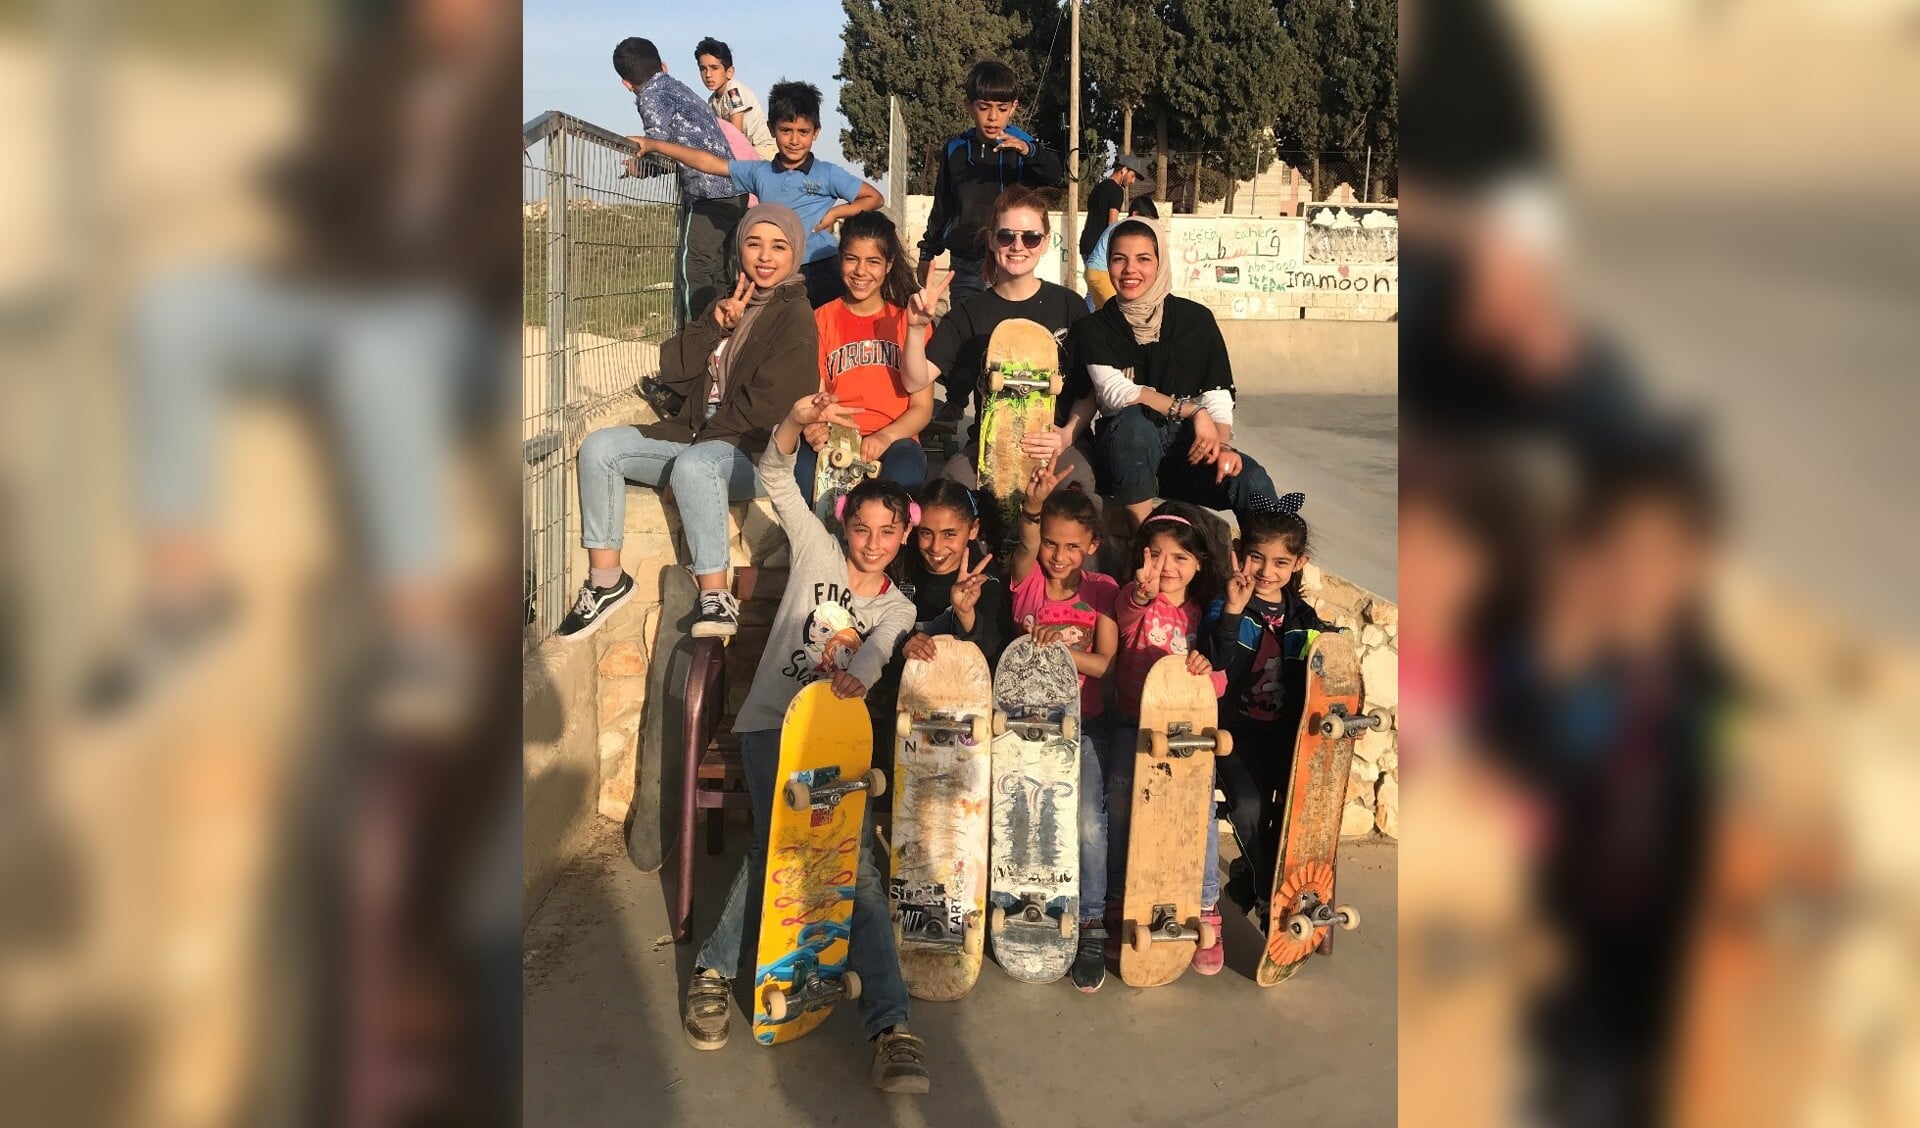 De organisatie Skatepal is verantwoordelijk voor het bouwen en onderhouden van skateboardparken in de Westelijke Jordaanoever. 